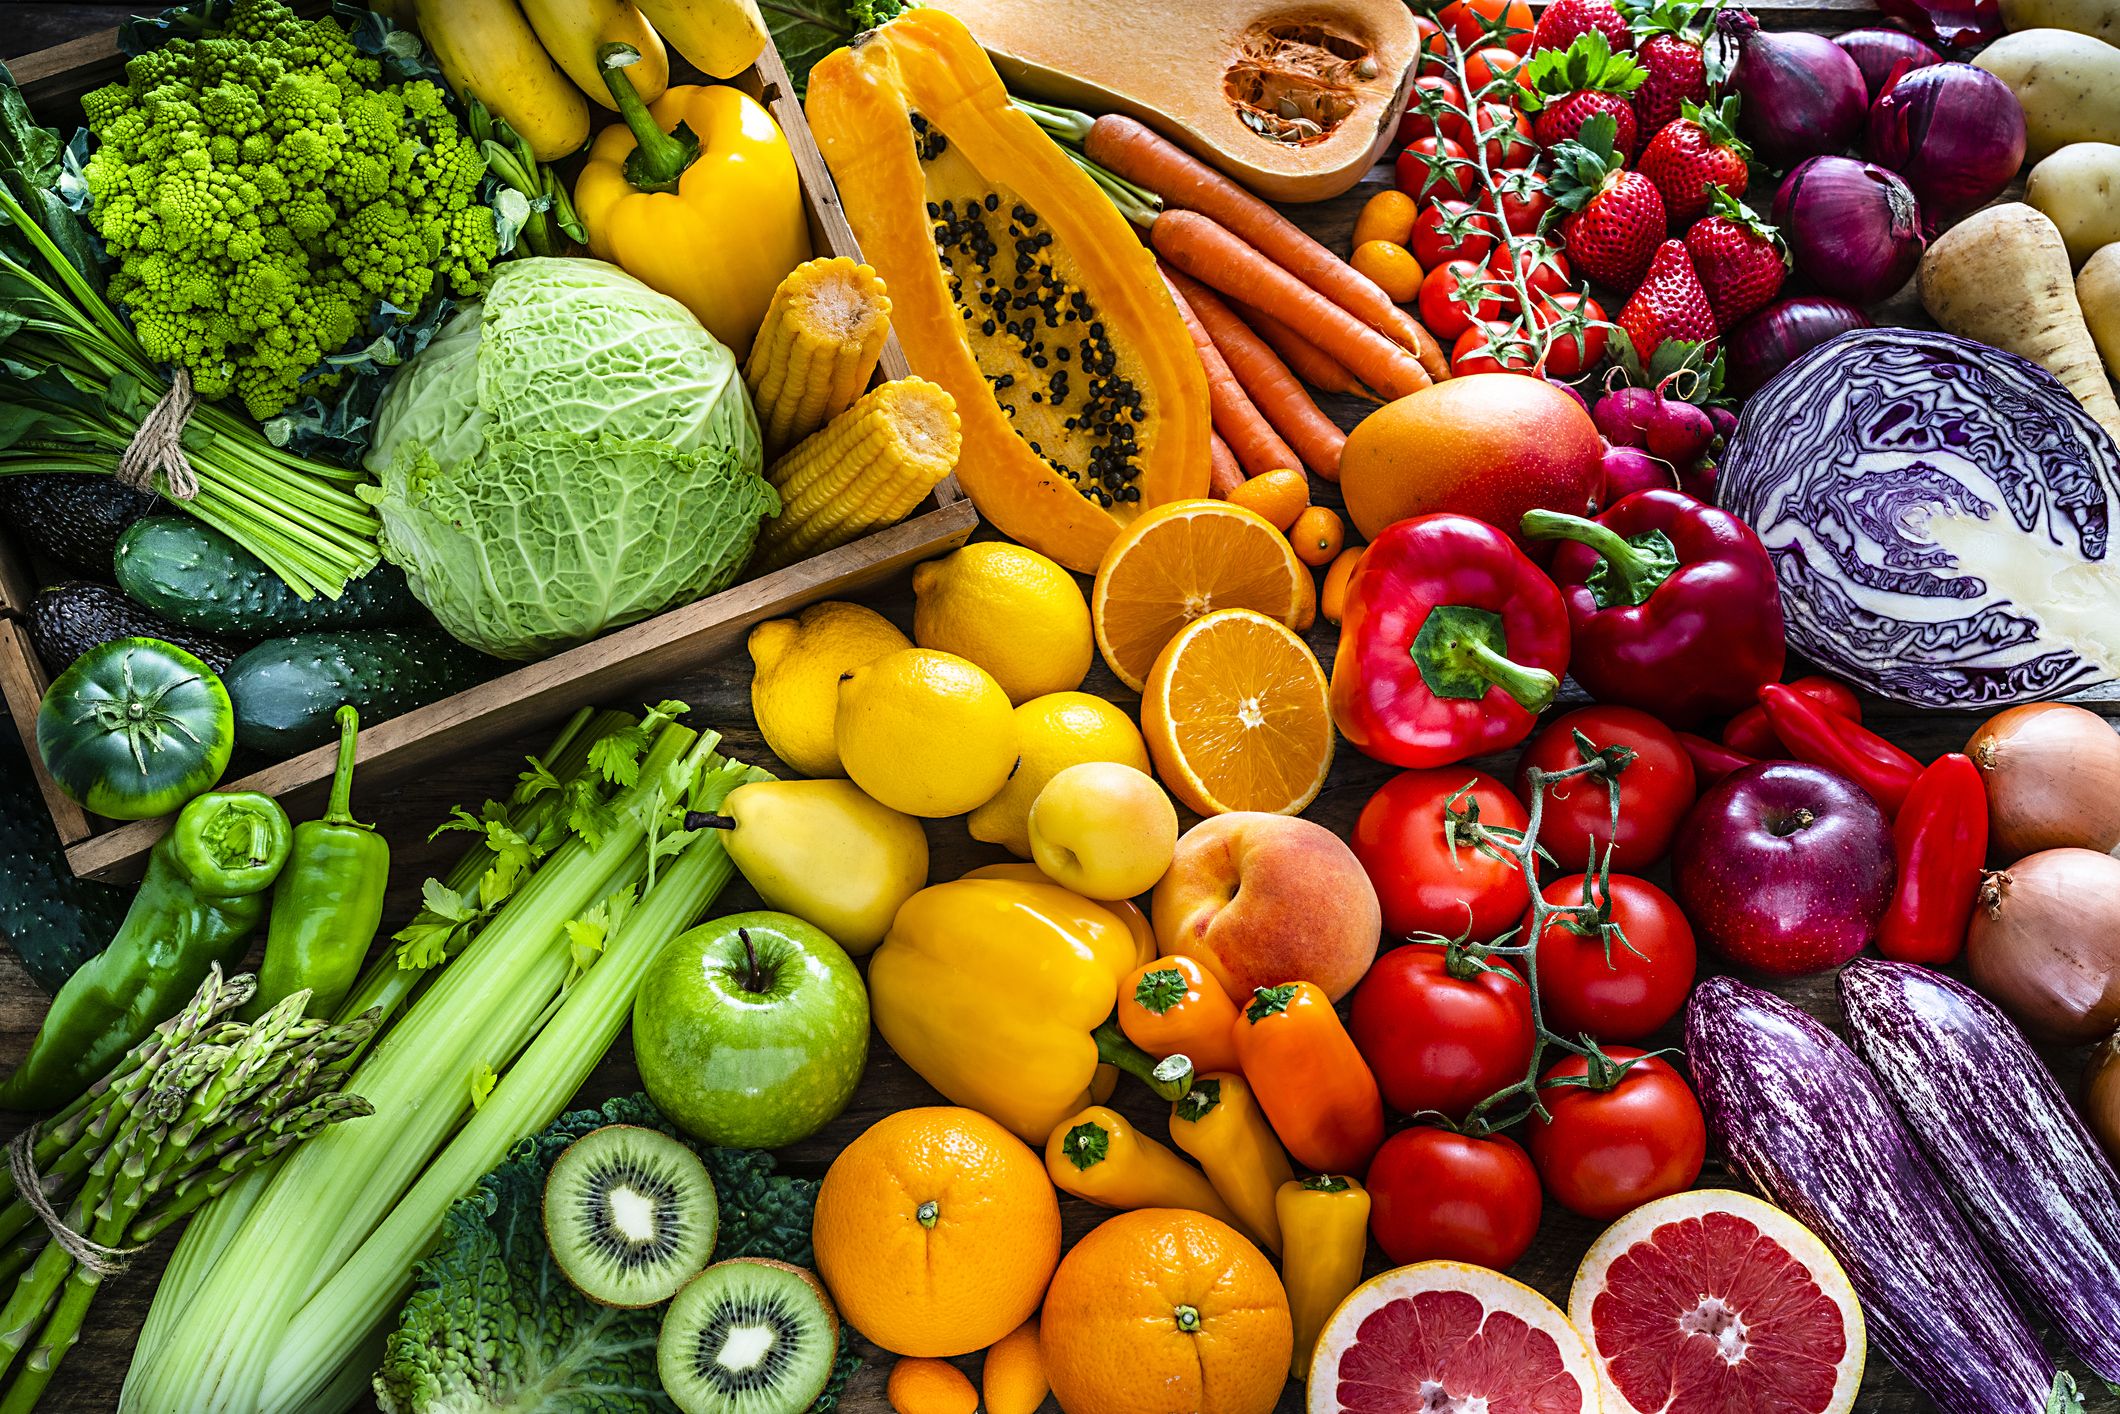 How to Prepare Seasonal Vegetables